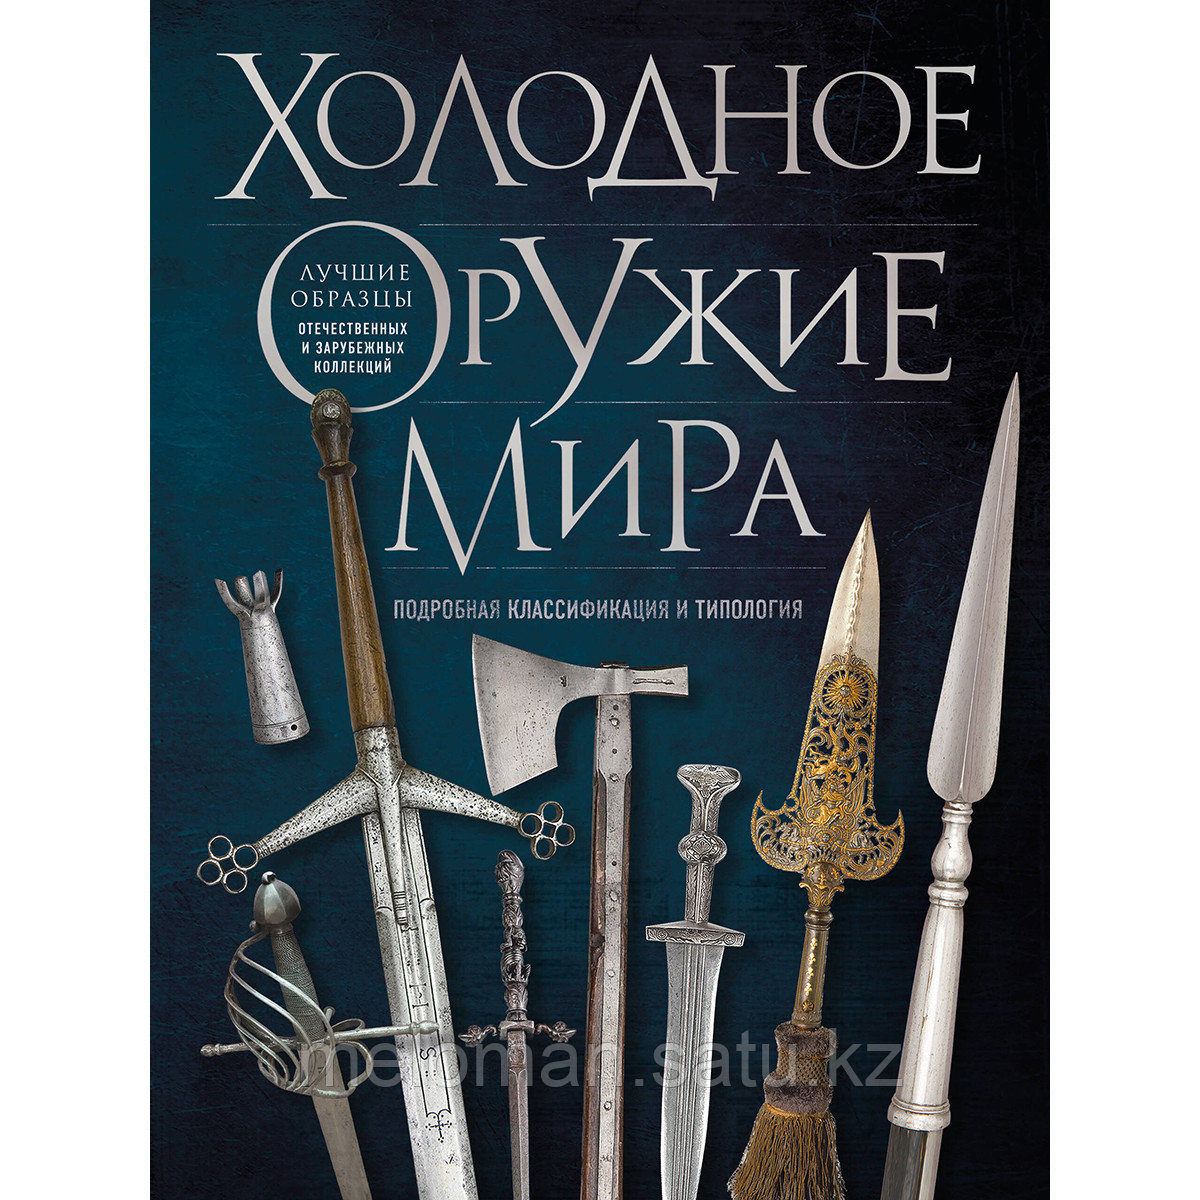 Козленко А. В.: Холодное оружие мира. 3-е изд.